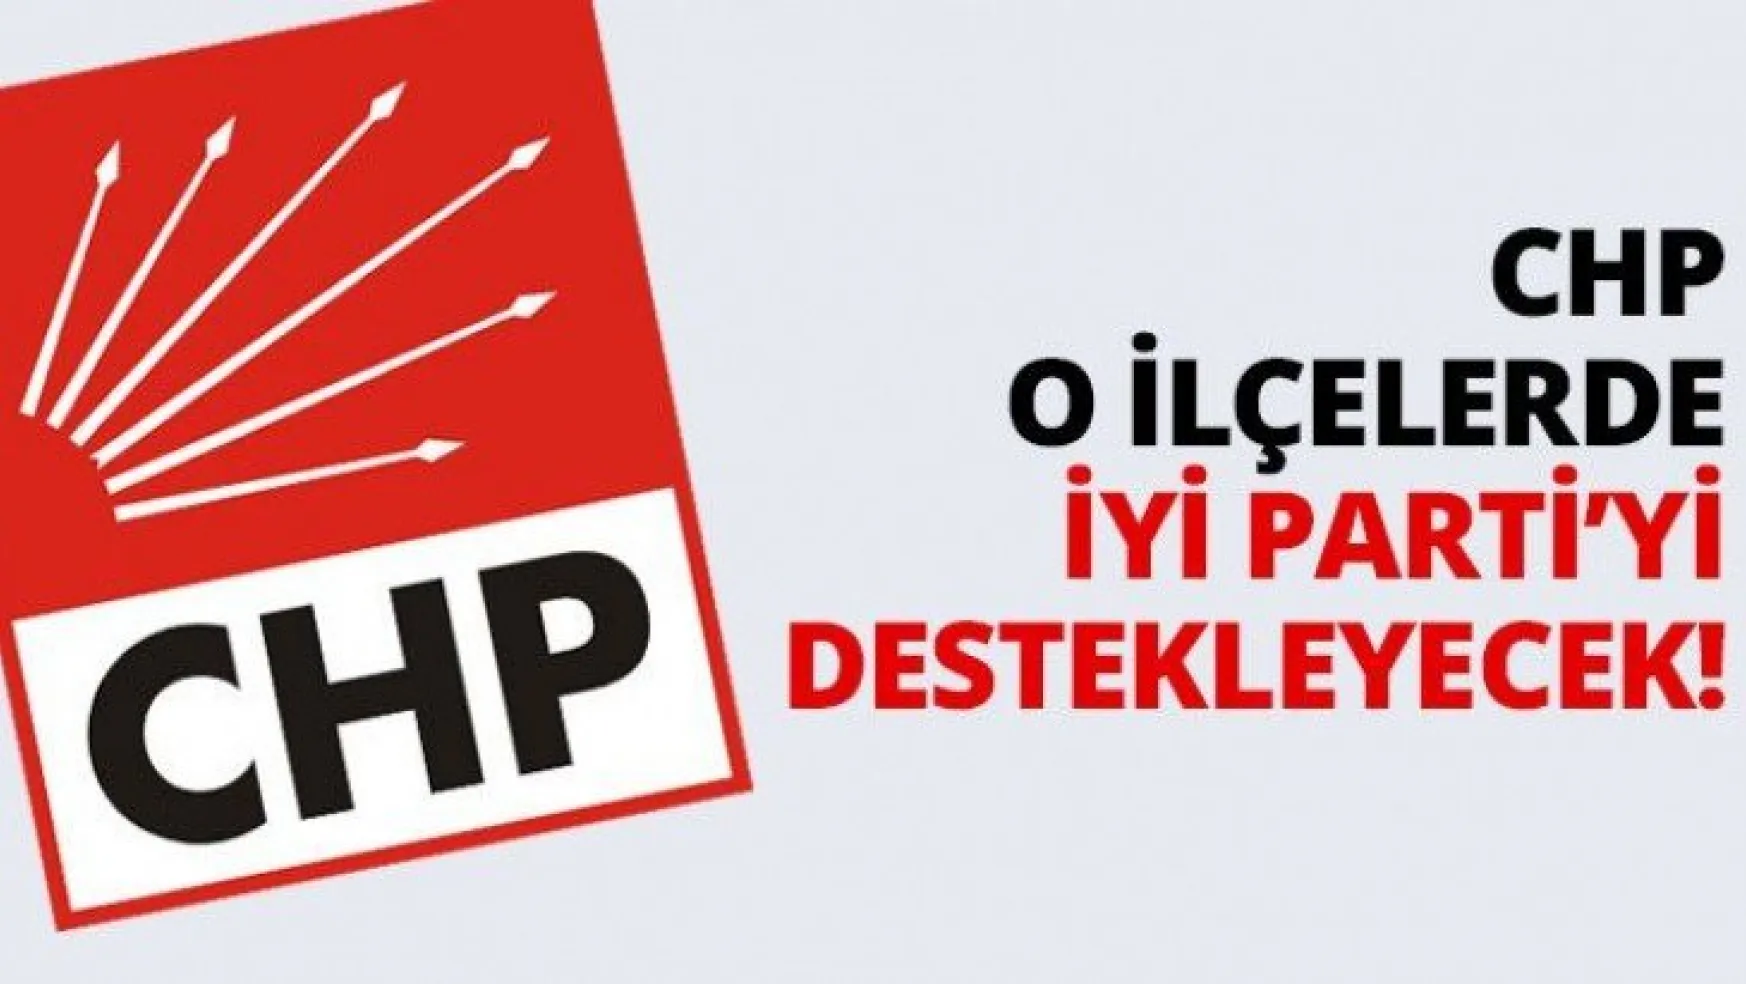 CHP o ilçelerde İYİ Parti'yi destekleyecek!